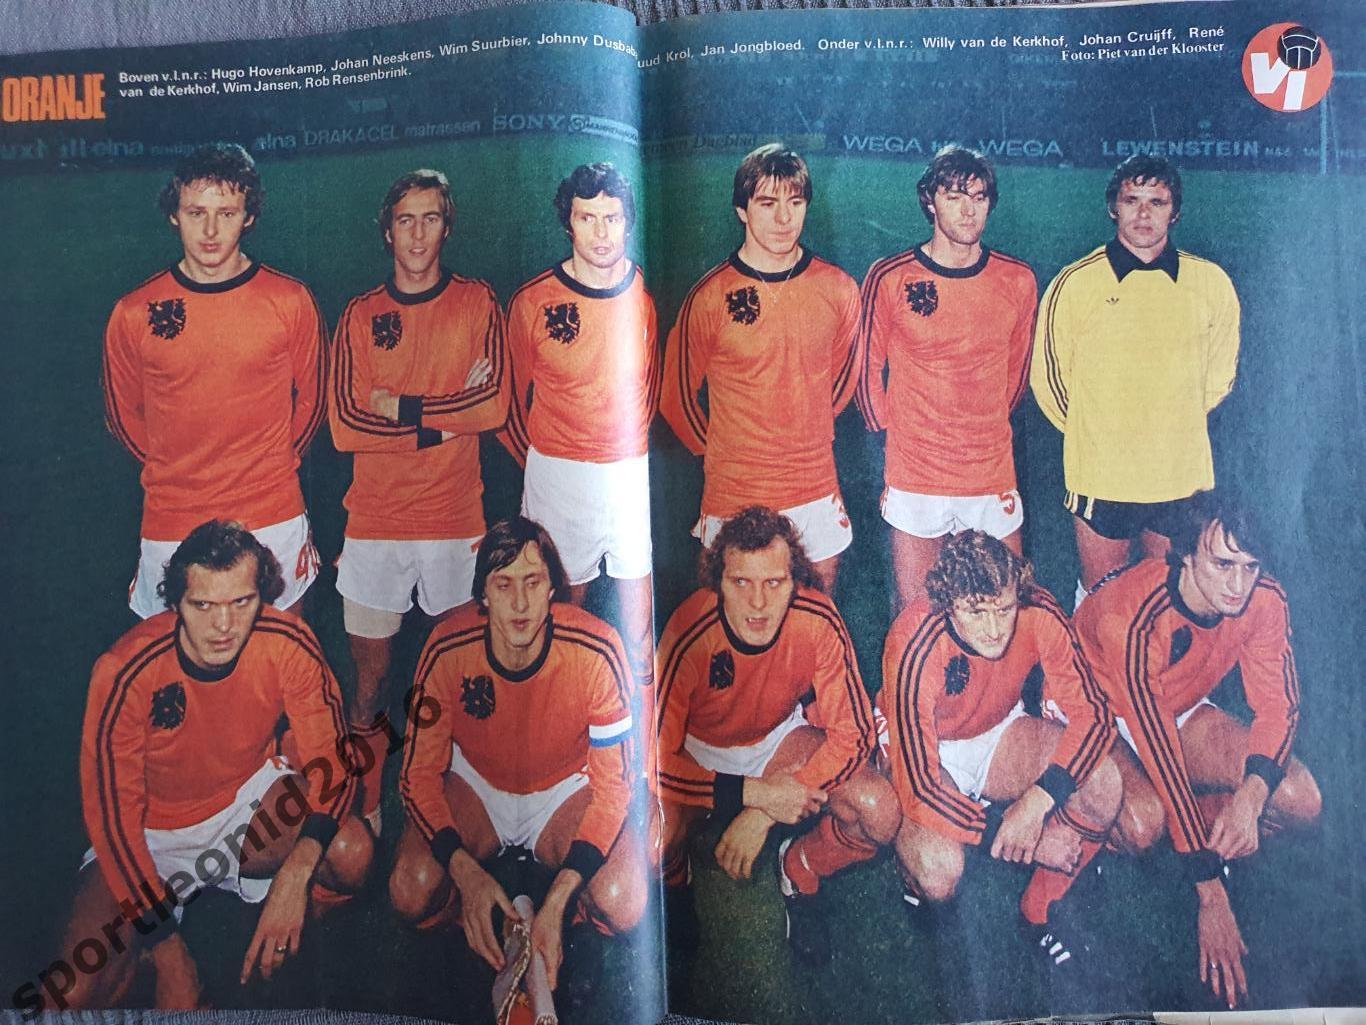 Voetbal International 1977 51 выпуск годовая подписка .Обобщённый).